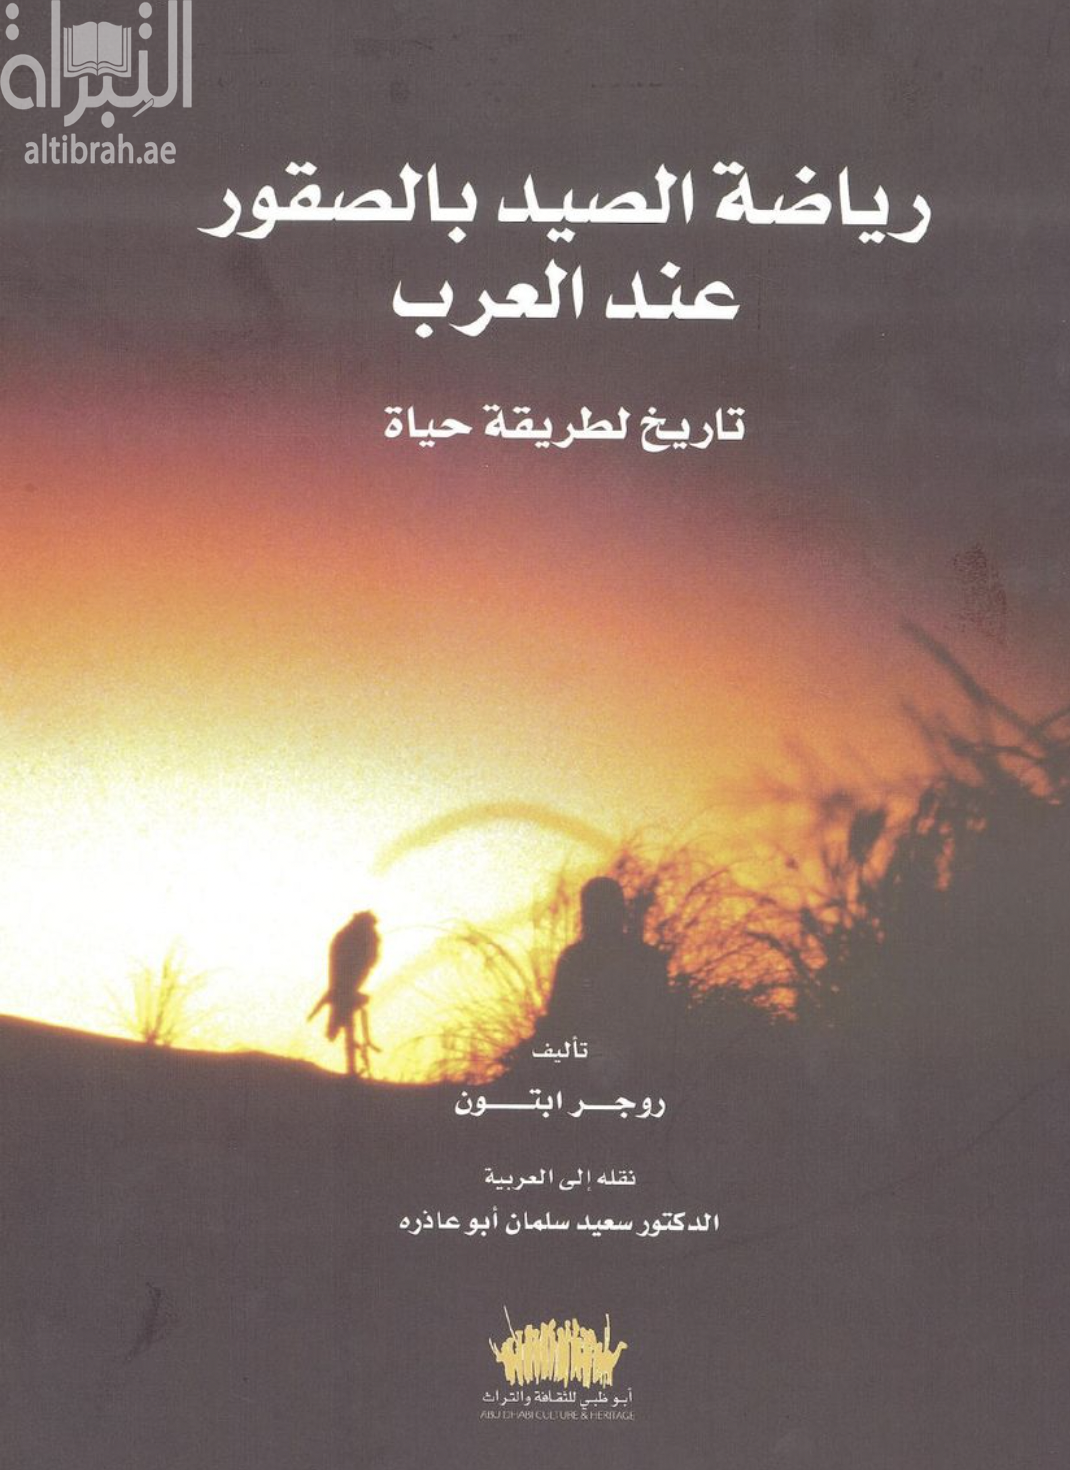 كتاب رياضة الصيد بالصقور عند العرب .. تاريخ لطريقة حياة